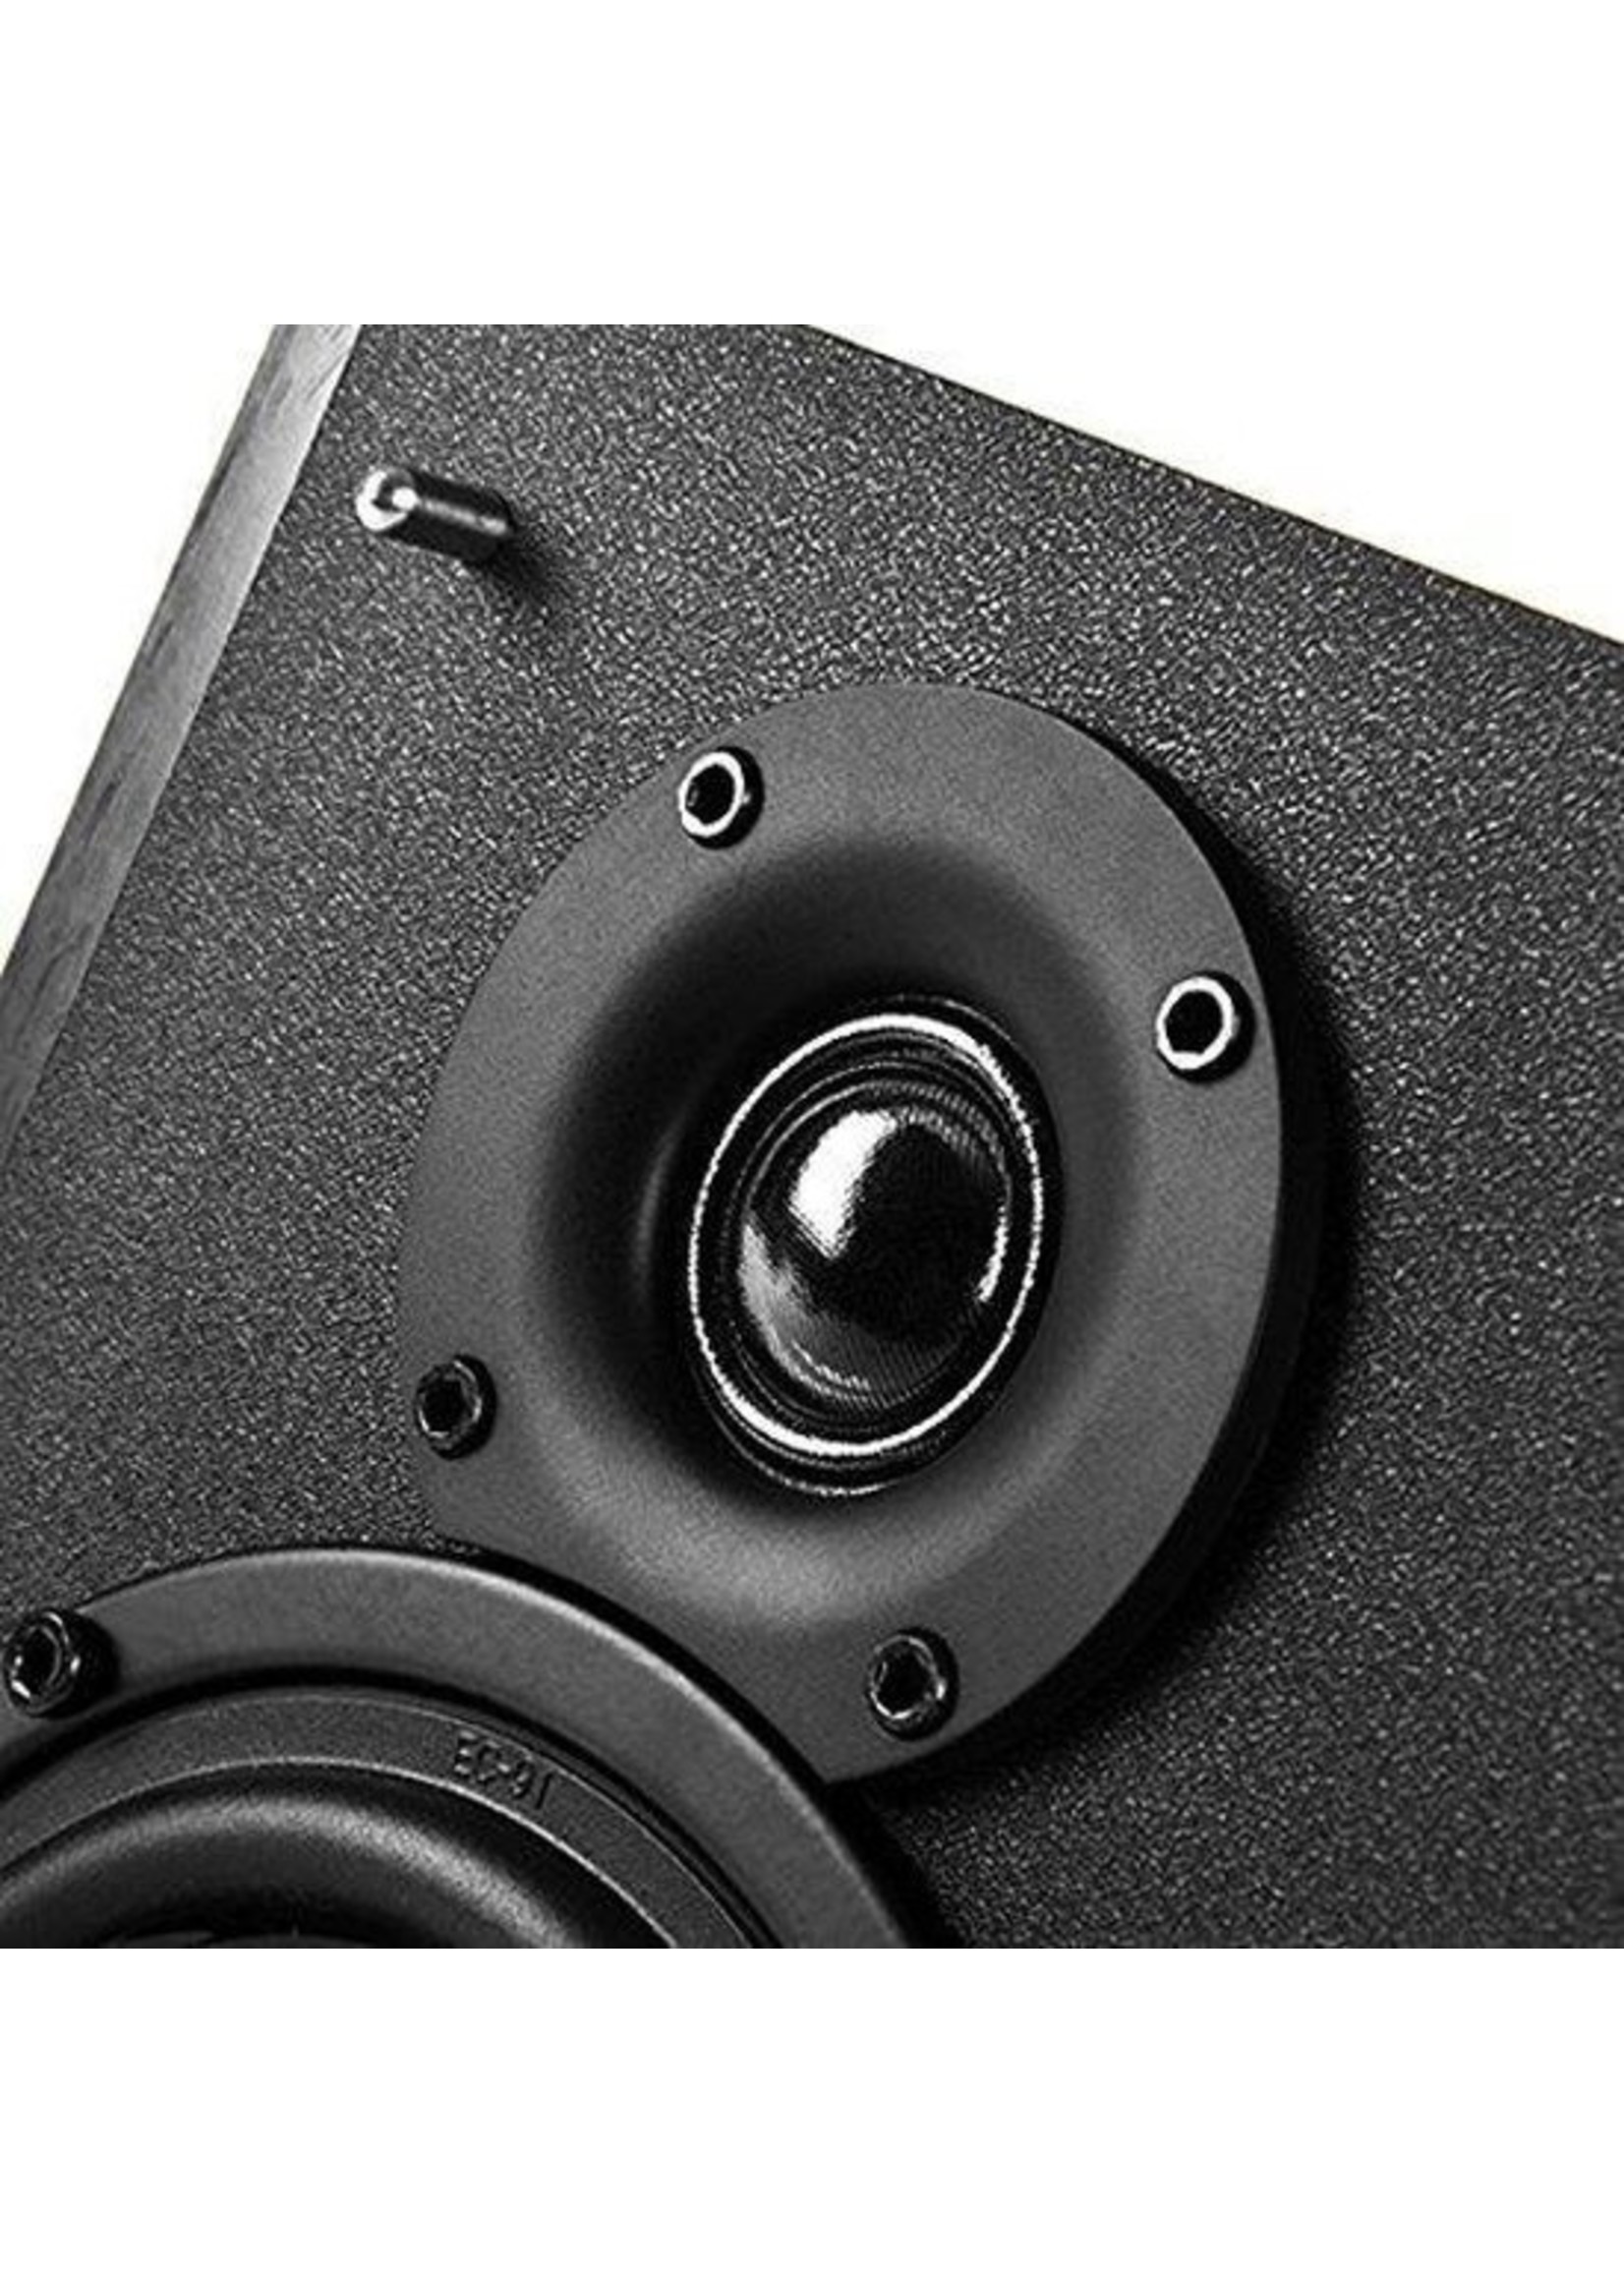 Edifier R1700BT - 2.0 bluetooth speakerset / Zwart